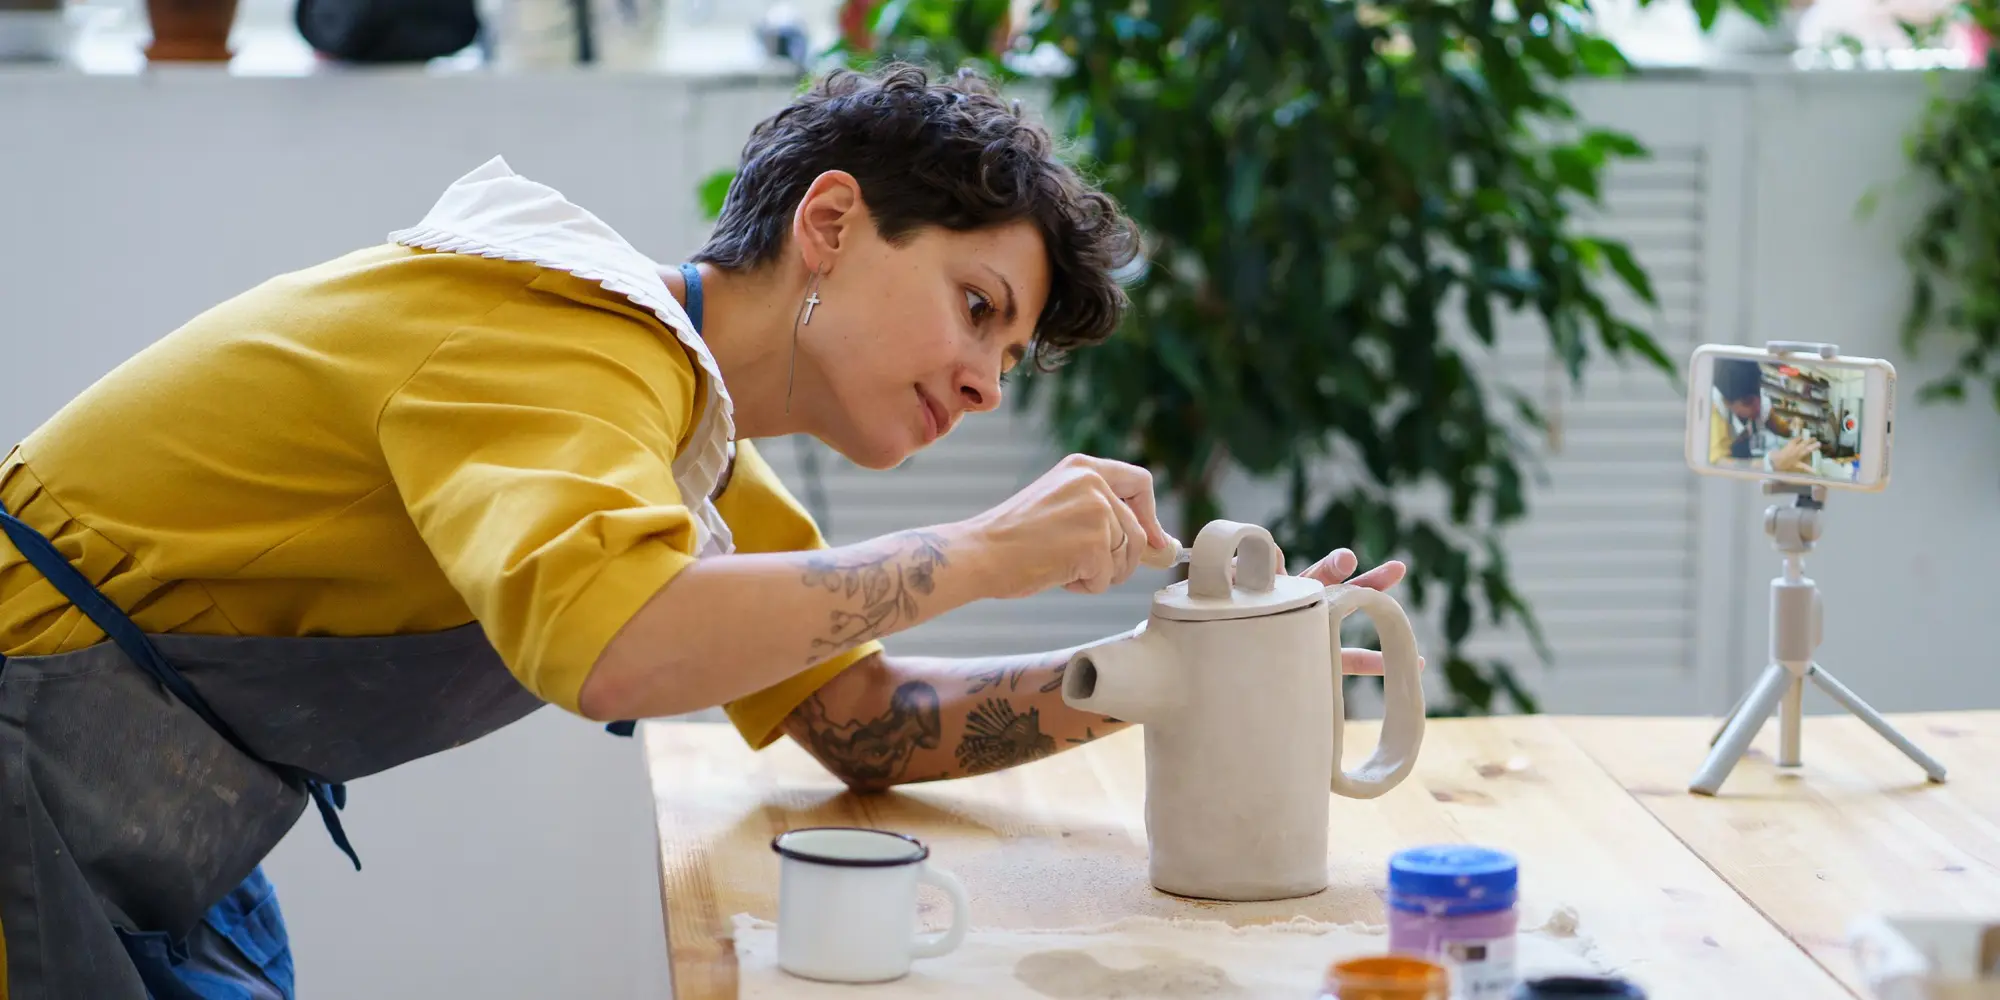 Kvinna filmar sig själv jobbar med keramik